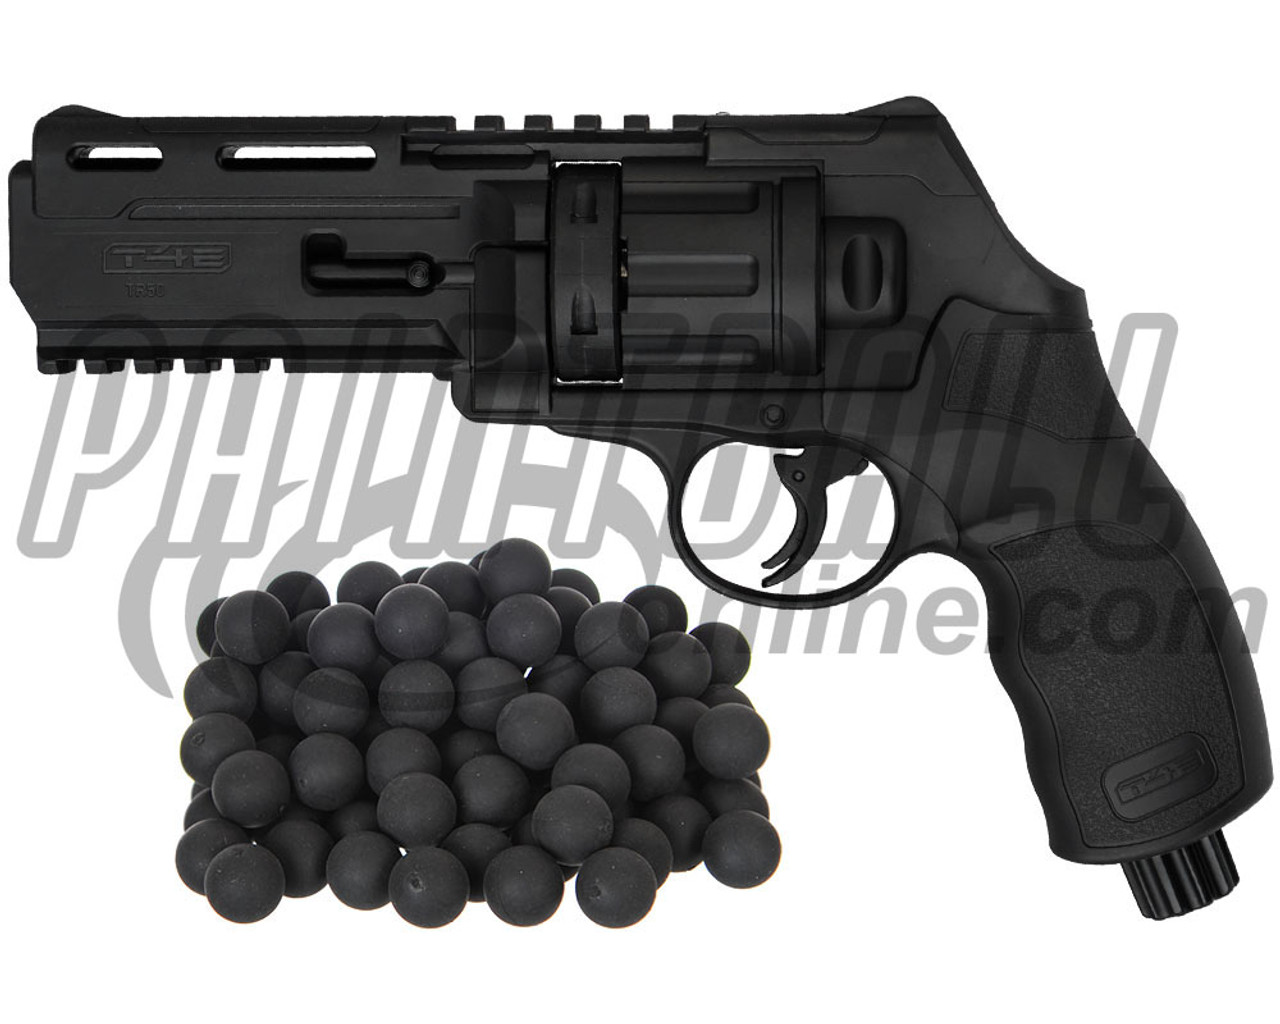 Umarex T4E TR50 Paintball Revolver Pistol .50 Caliber Grey-0